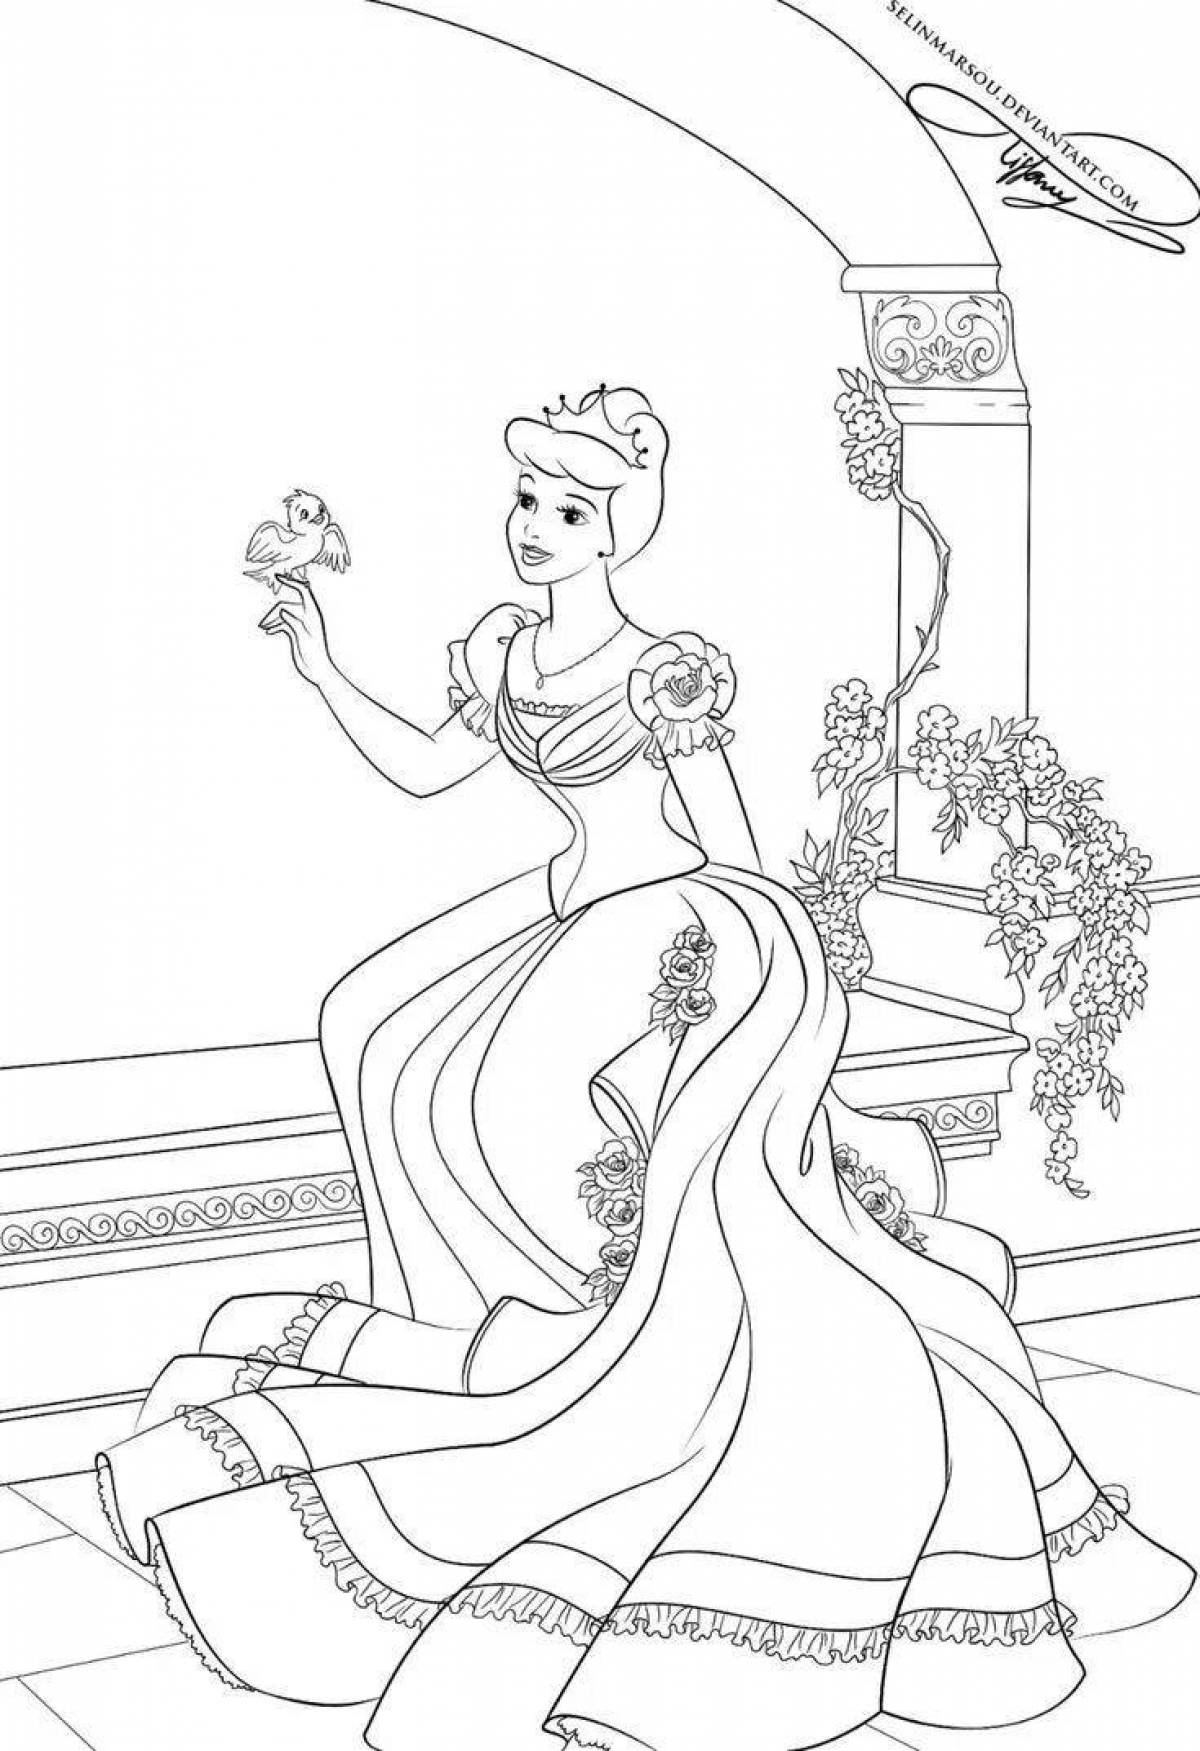 Dazzling Cinderella princess coloring book